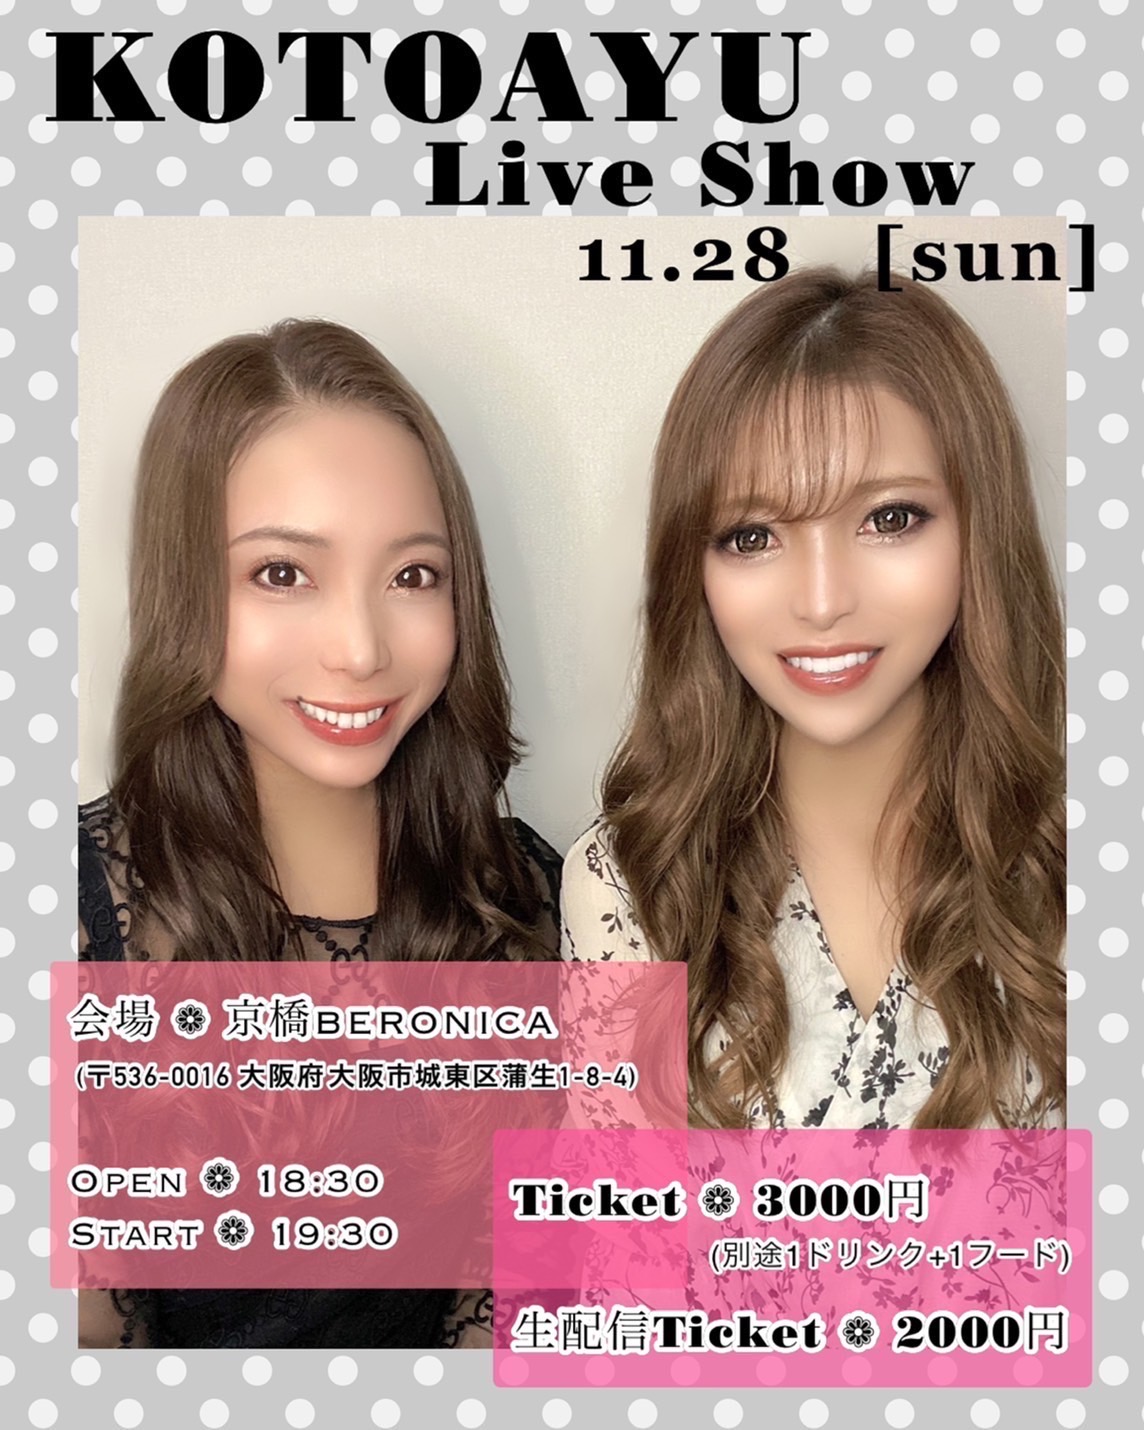 11/28 KOTOAYU LIVE SHOW